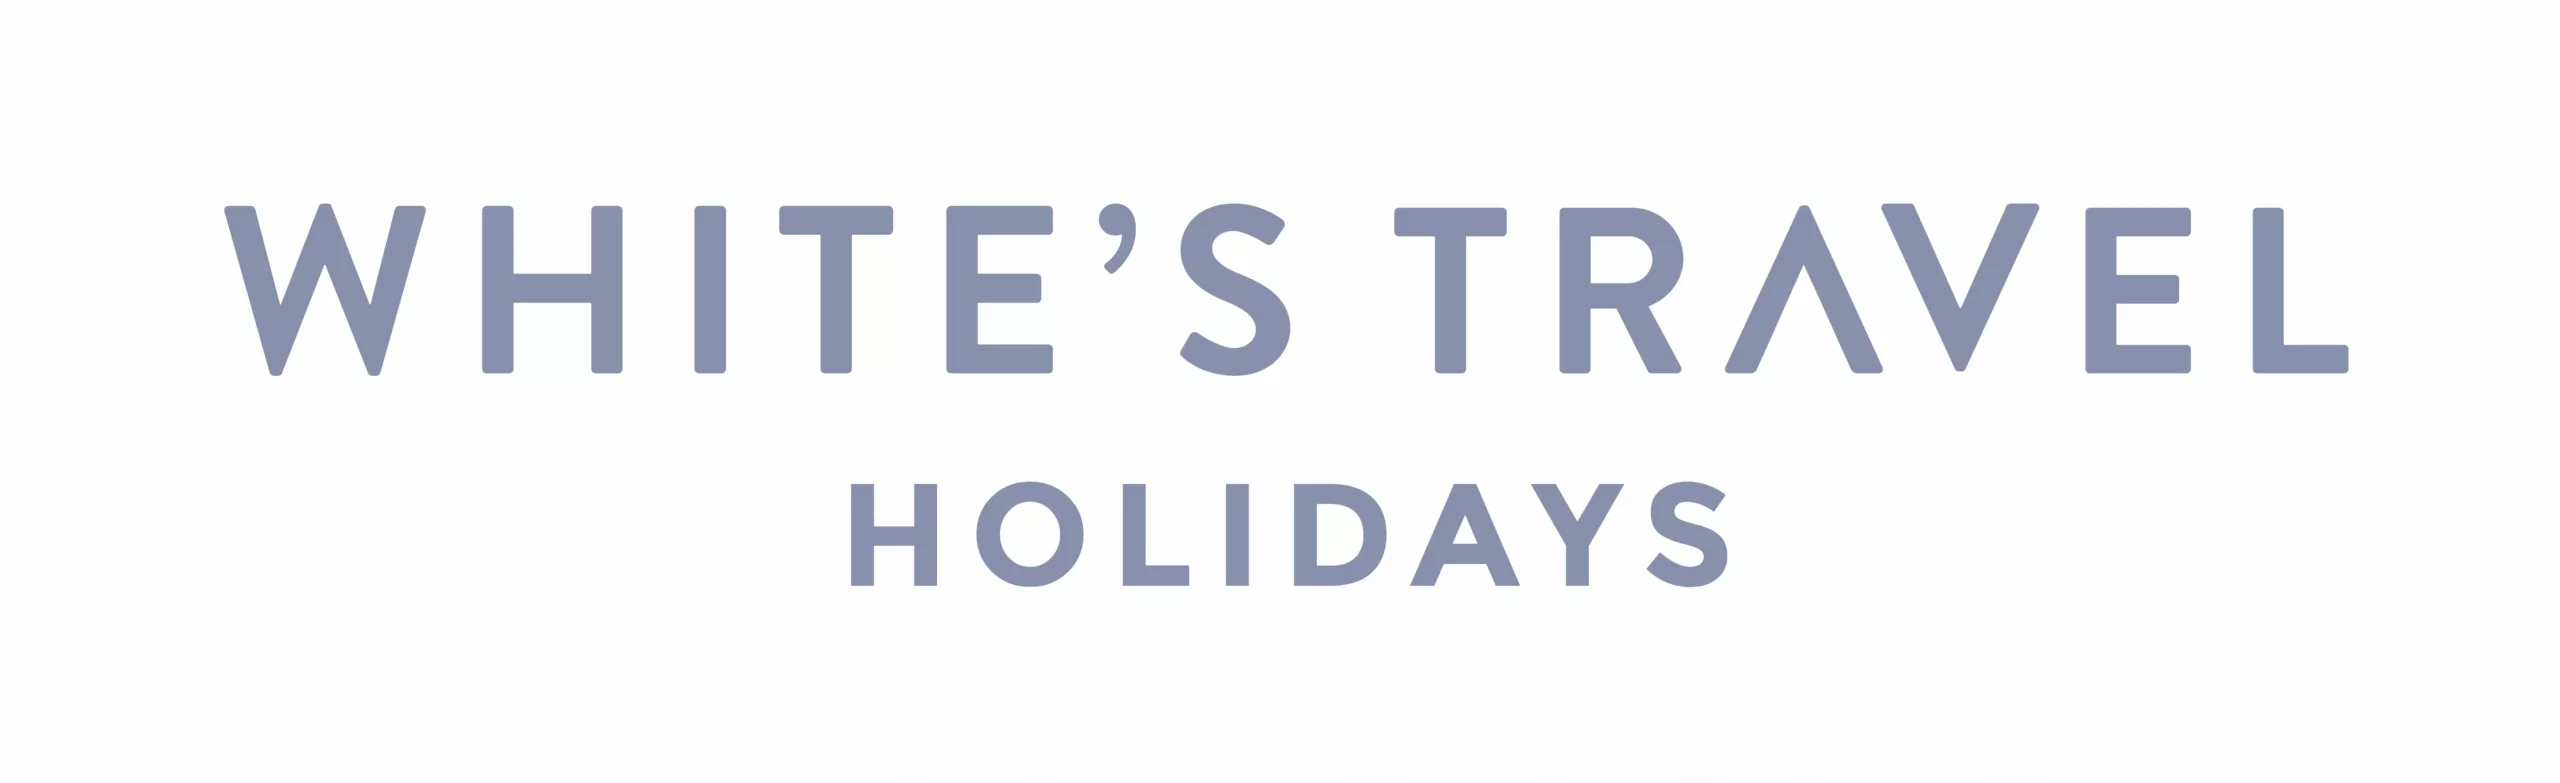 White's-Travel-Holidays-logo-CMYK